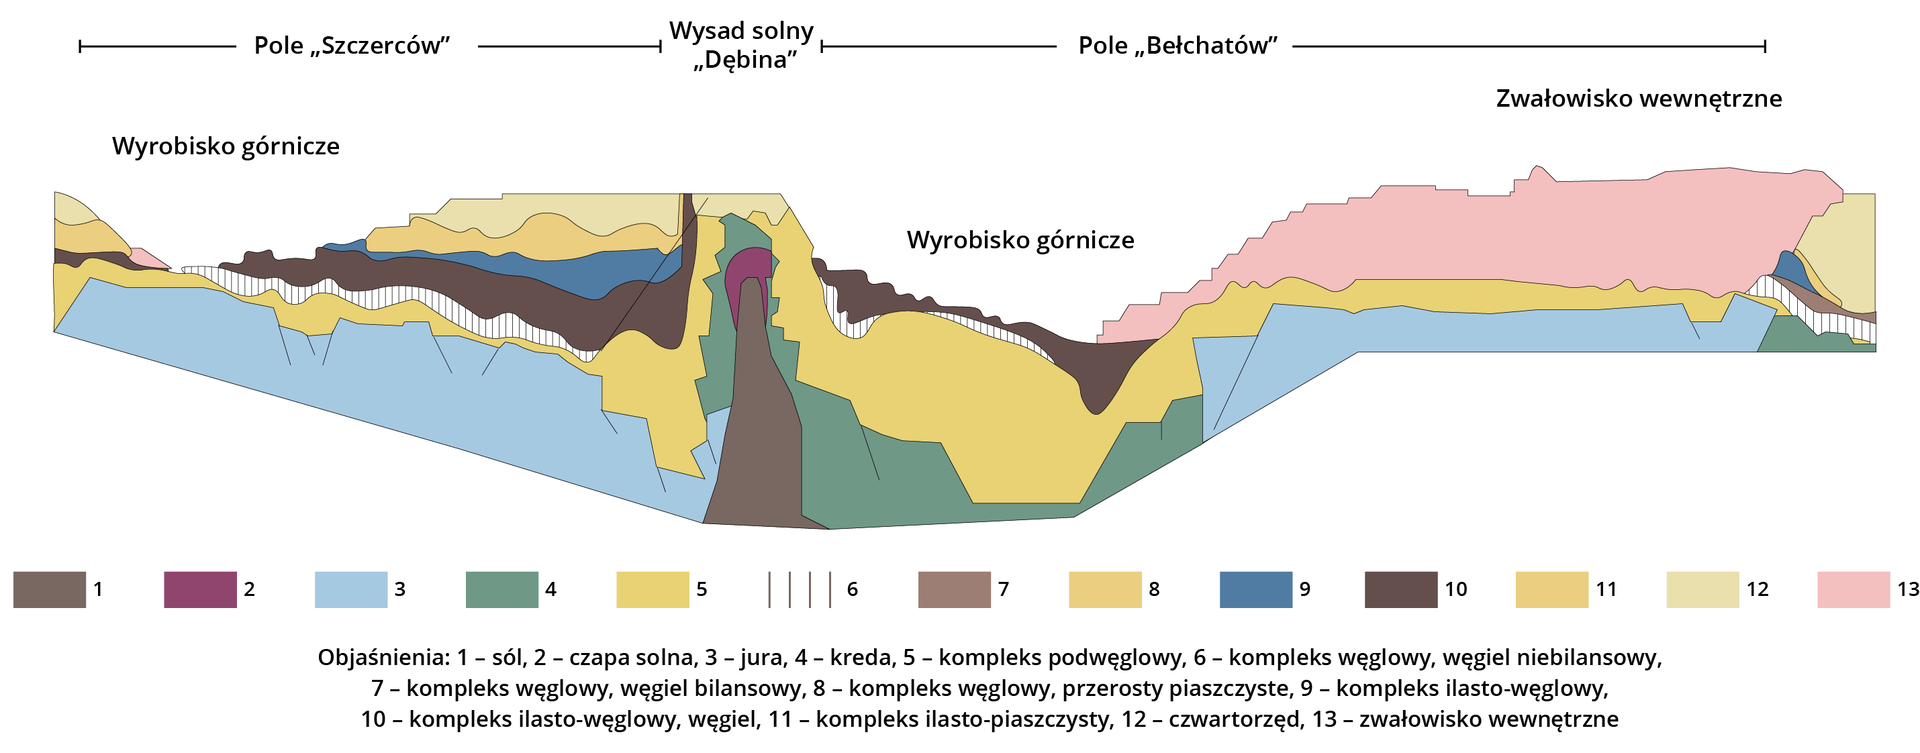 Na ilustracji jest przekrój geologiczny przez złoża węgla brunatnego w rejonie Bełchatowa. Na przekroju zaznaczono poszczególne warstwy w rejonie Pola Szczerców, wysadu solnego Dębina oraz Pola Bełchatów. Po lewej stronie schematu oraz w centralnej części jest wyrobisko górnicze, po prawej stronie schematu jest zwałowisko wewnętrzne. W Polu Szczerców (lewa strona przekroju) w wyrobisku górniczym zaznaczono w górnej warstwie kompleks ilasto-węglowy, węgiel, pod którym jest warstwa węgla niebilansowego. Pomiędzy wyrobiskiem górniczym Pola Szczerców a wyrobiskiem górniczym Pola Bełchatów jest Wysad solny Dębina. Górna warstwa pochodzi z czwartorzędu. Następnie są osady kredowe. W ich górnej części znajduje się czapa solna, a pod nią w postaci pionowego komina są złoża soli. W wyrobisku górniczym na Polu Bełchatów górną warstwę stanowi kompleks ilasto-węglowy, węgiel. Pod nim jest węgiel niebilansowy, a następnie gruba warstwa kompleksu węglowego, przerostów piaszczystych, pod którymi są osady kredowe. Po prawej stronie przekroju jest zwałowisko wewnętrzne Pola Bełchatów. 